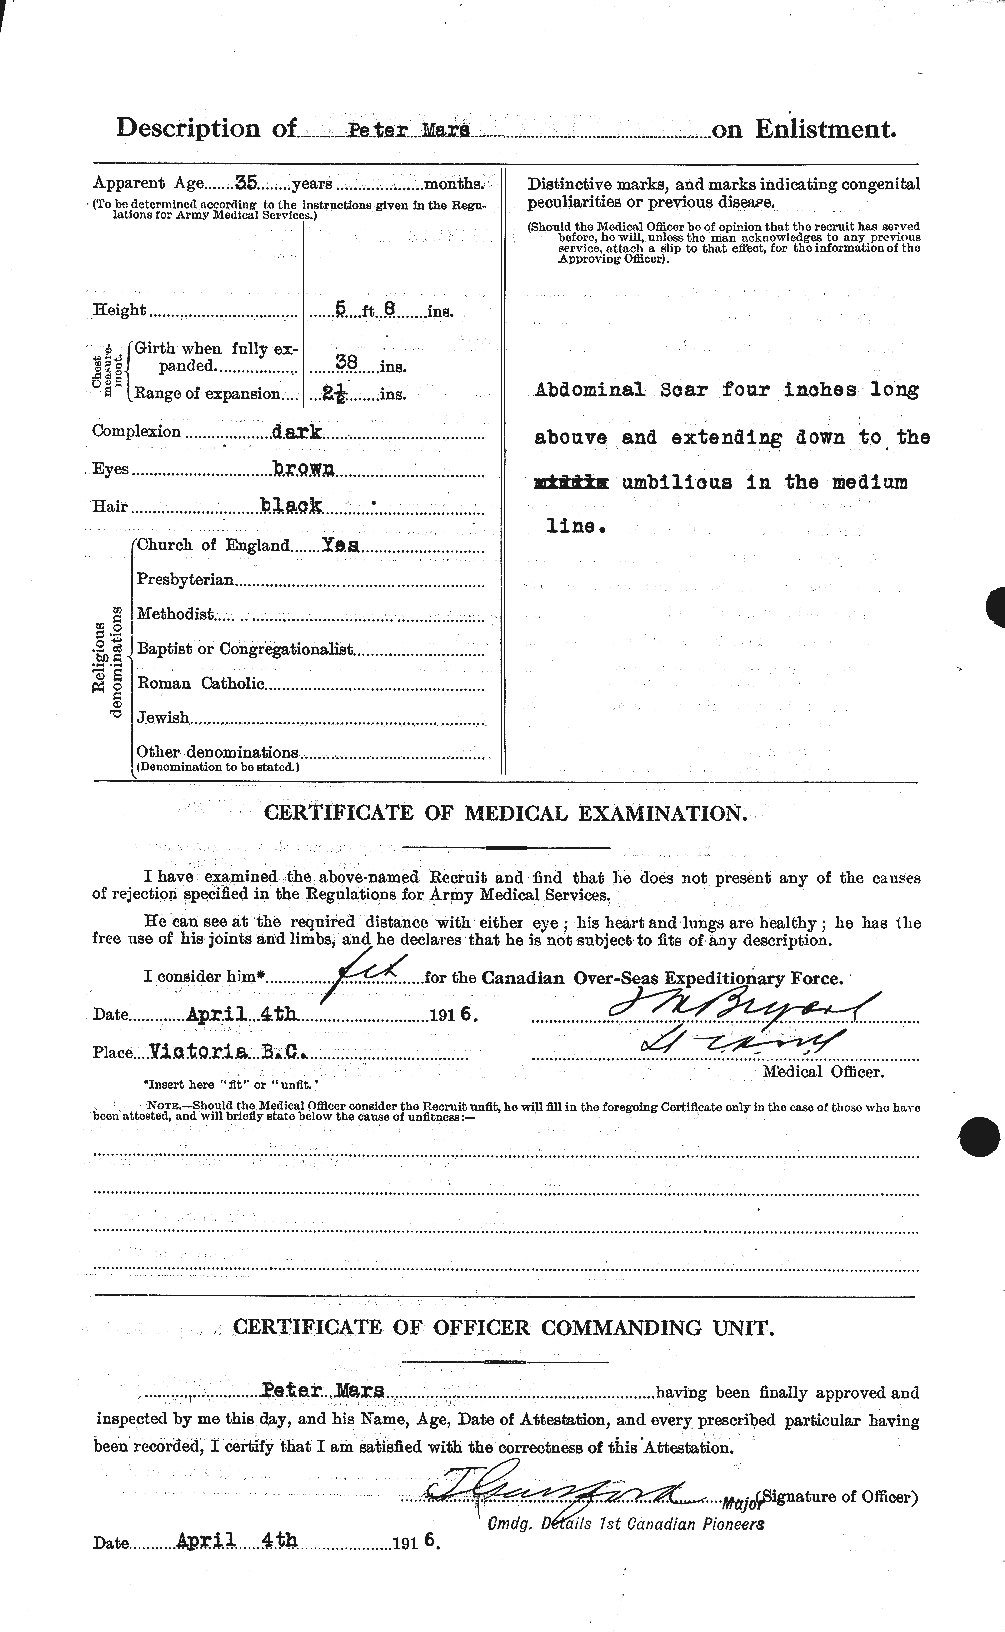 Dossiers du Personnel de la Première Guerre mondiale - CEC 486870b